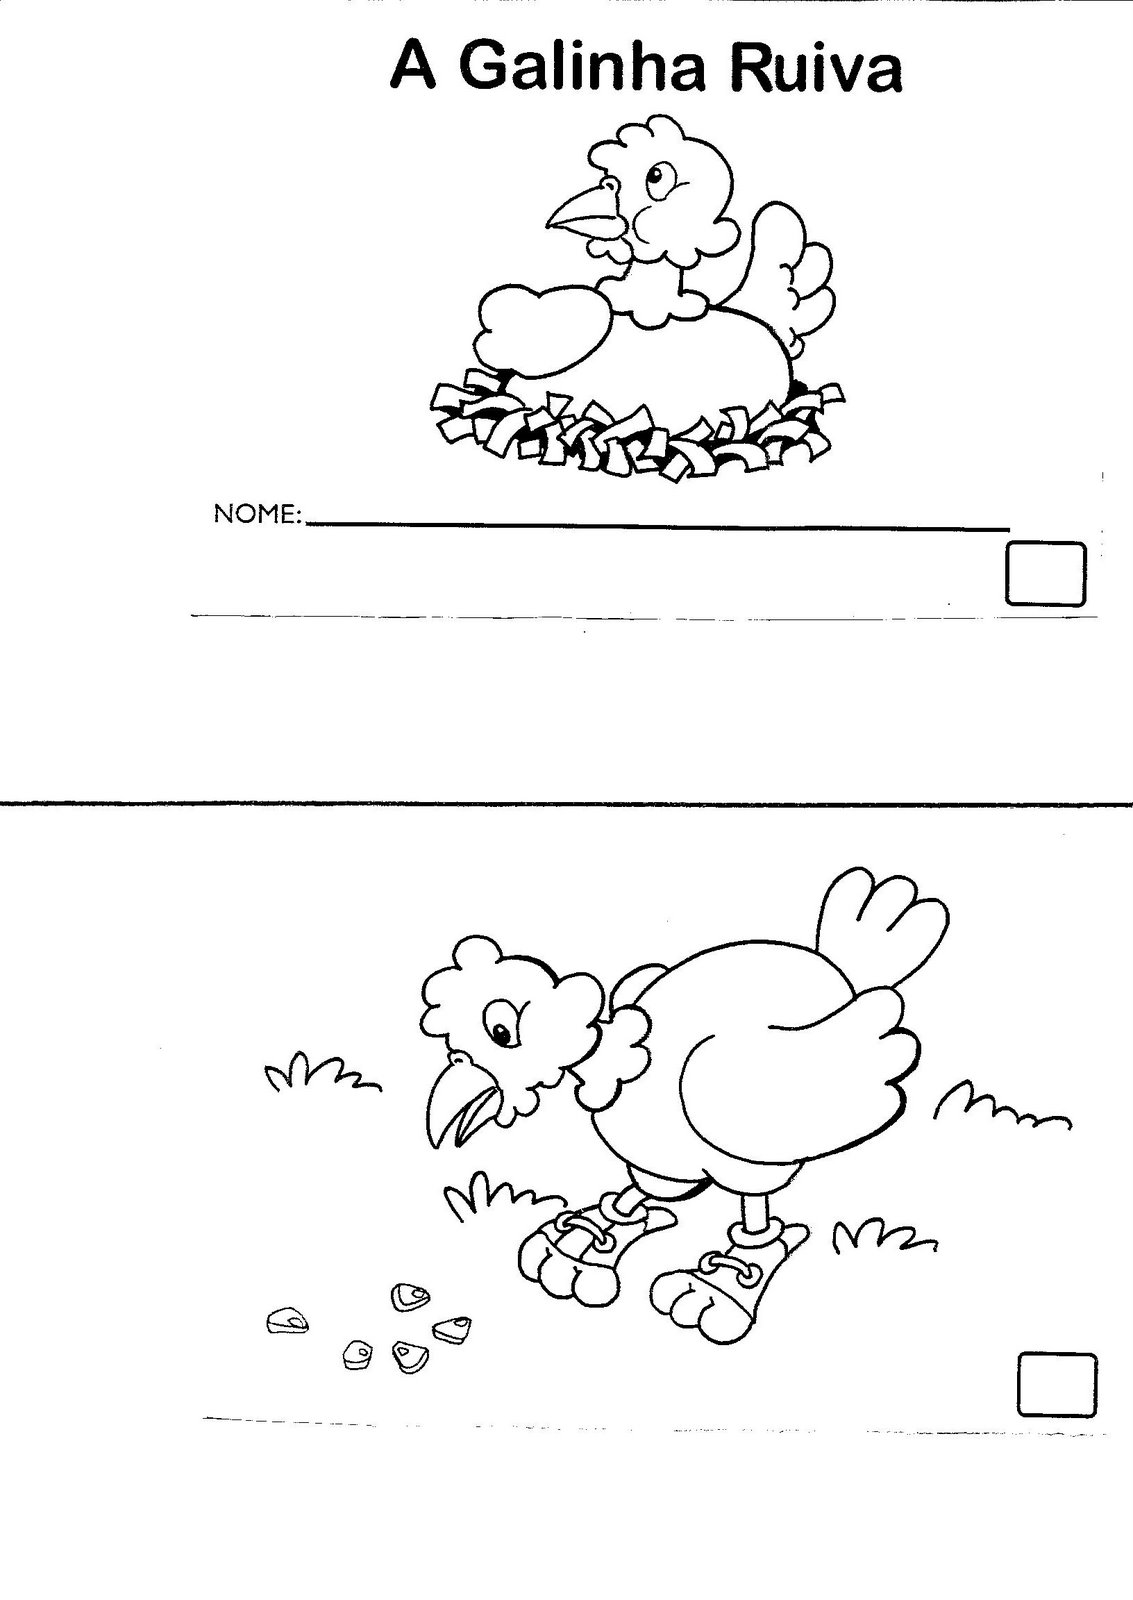 História - A galinha Ruiva: Sequência didática - Atividades